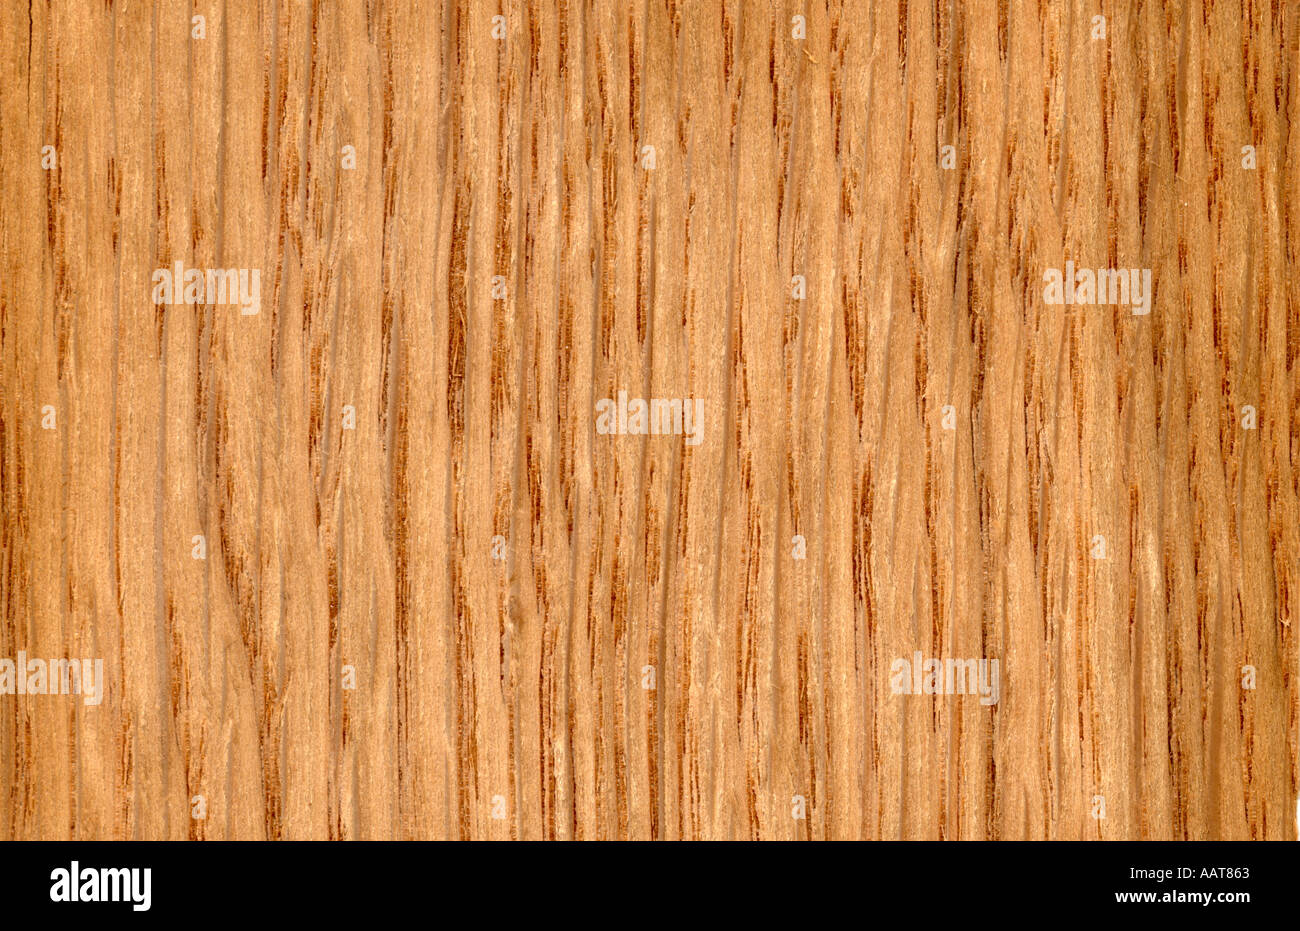 White oak wood grain Quercus alba North America Stock Photo